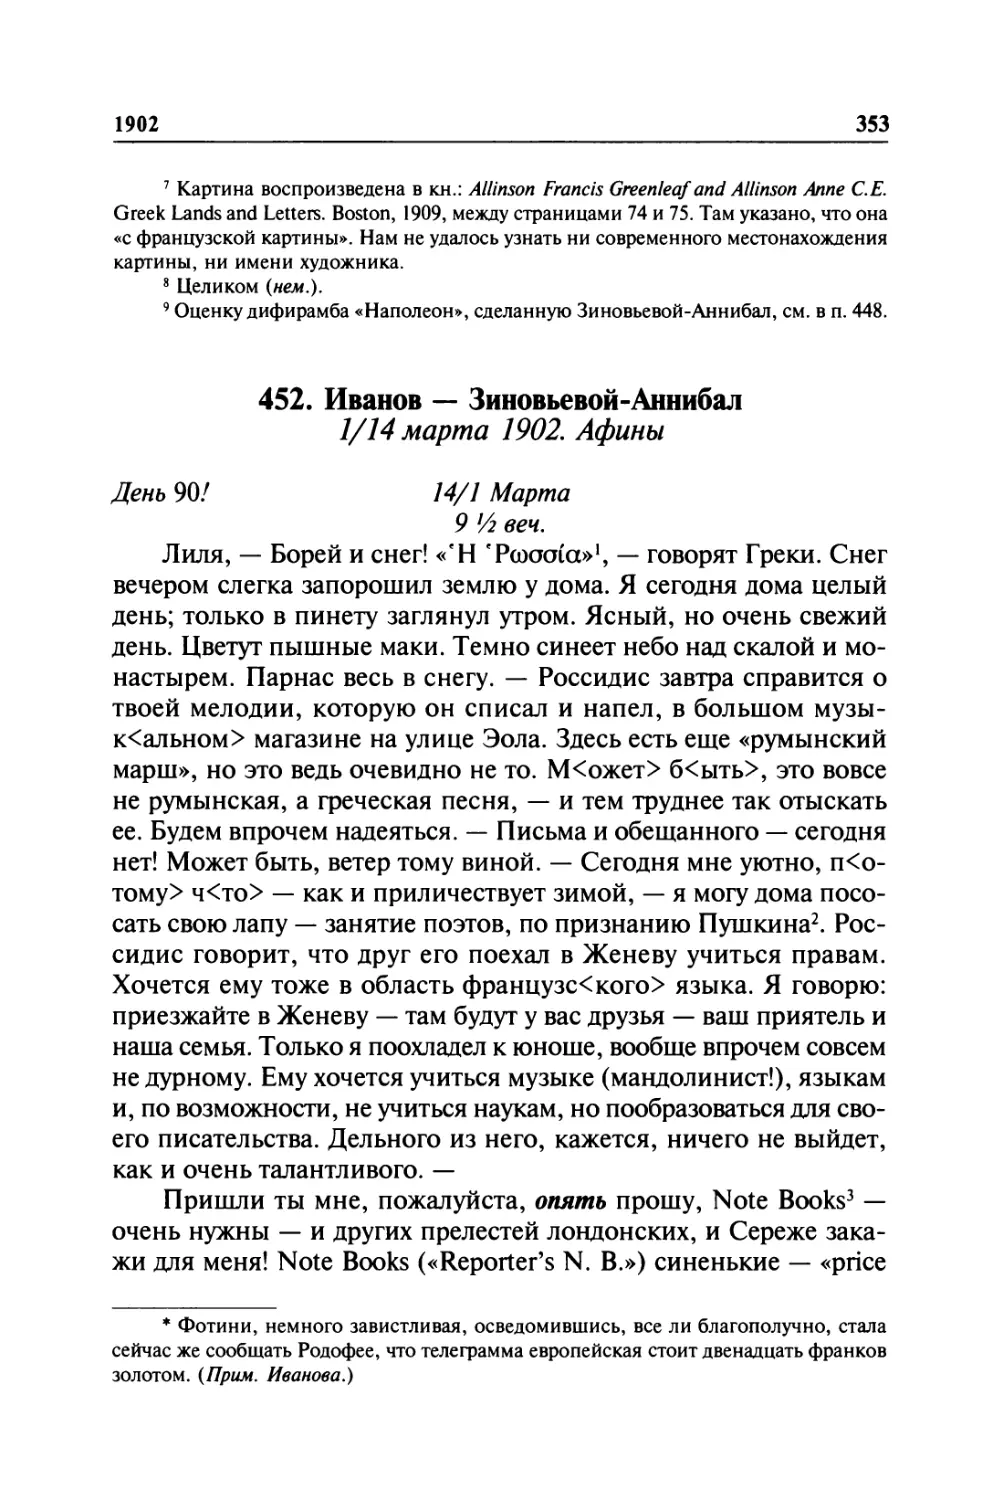 452. Иванов — Зиновьевой-Аннибал. 1/14 марта 1902. Афины